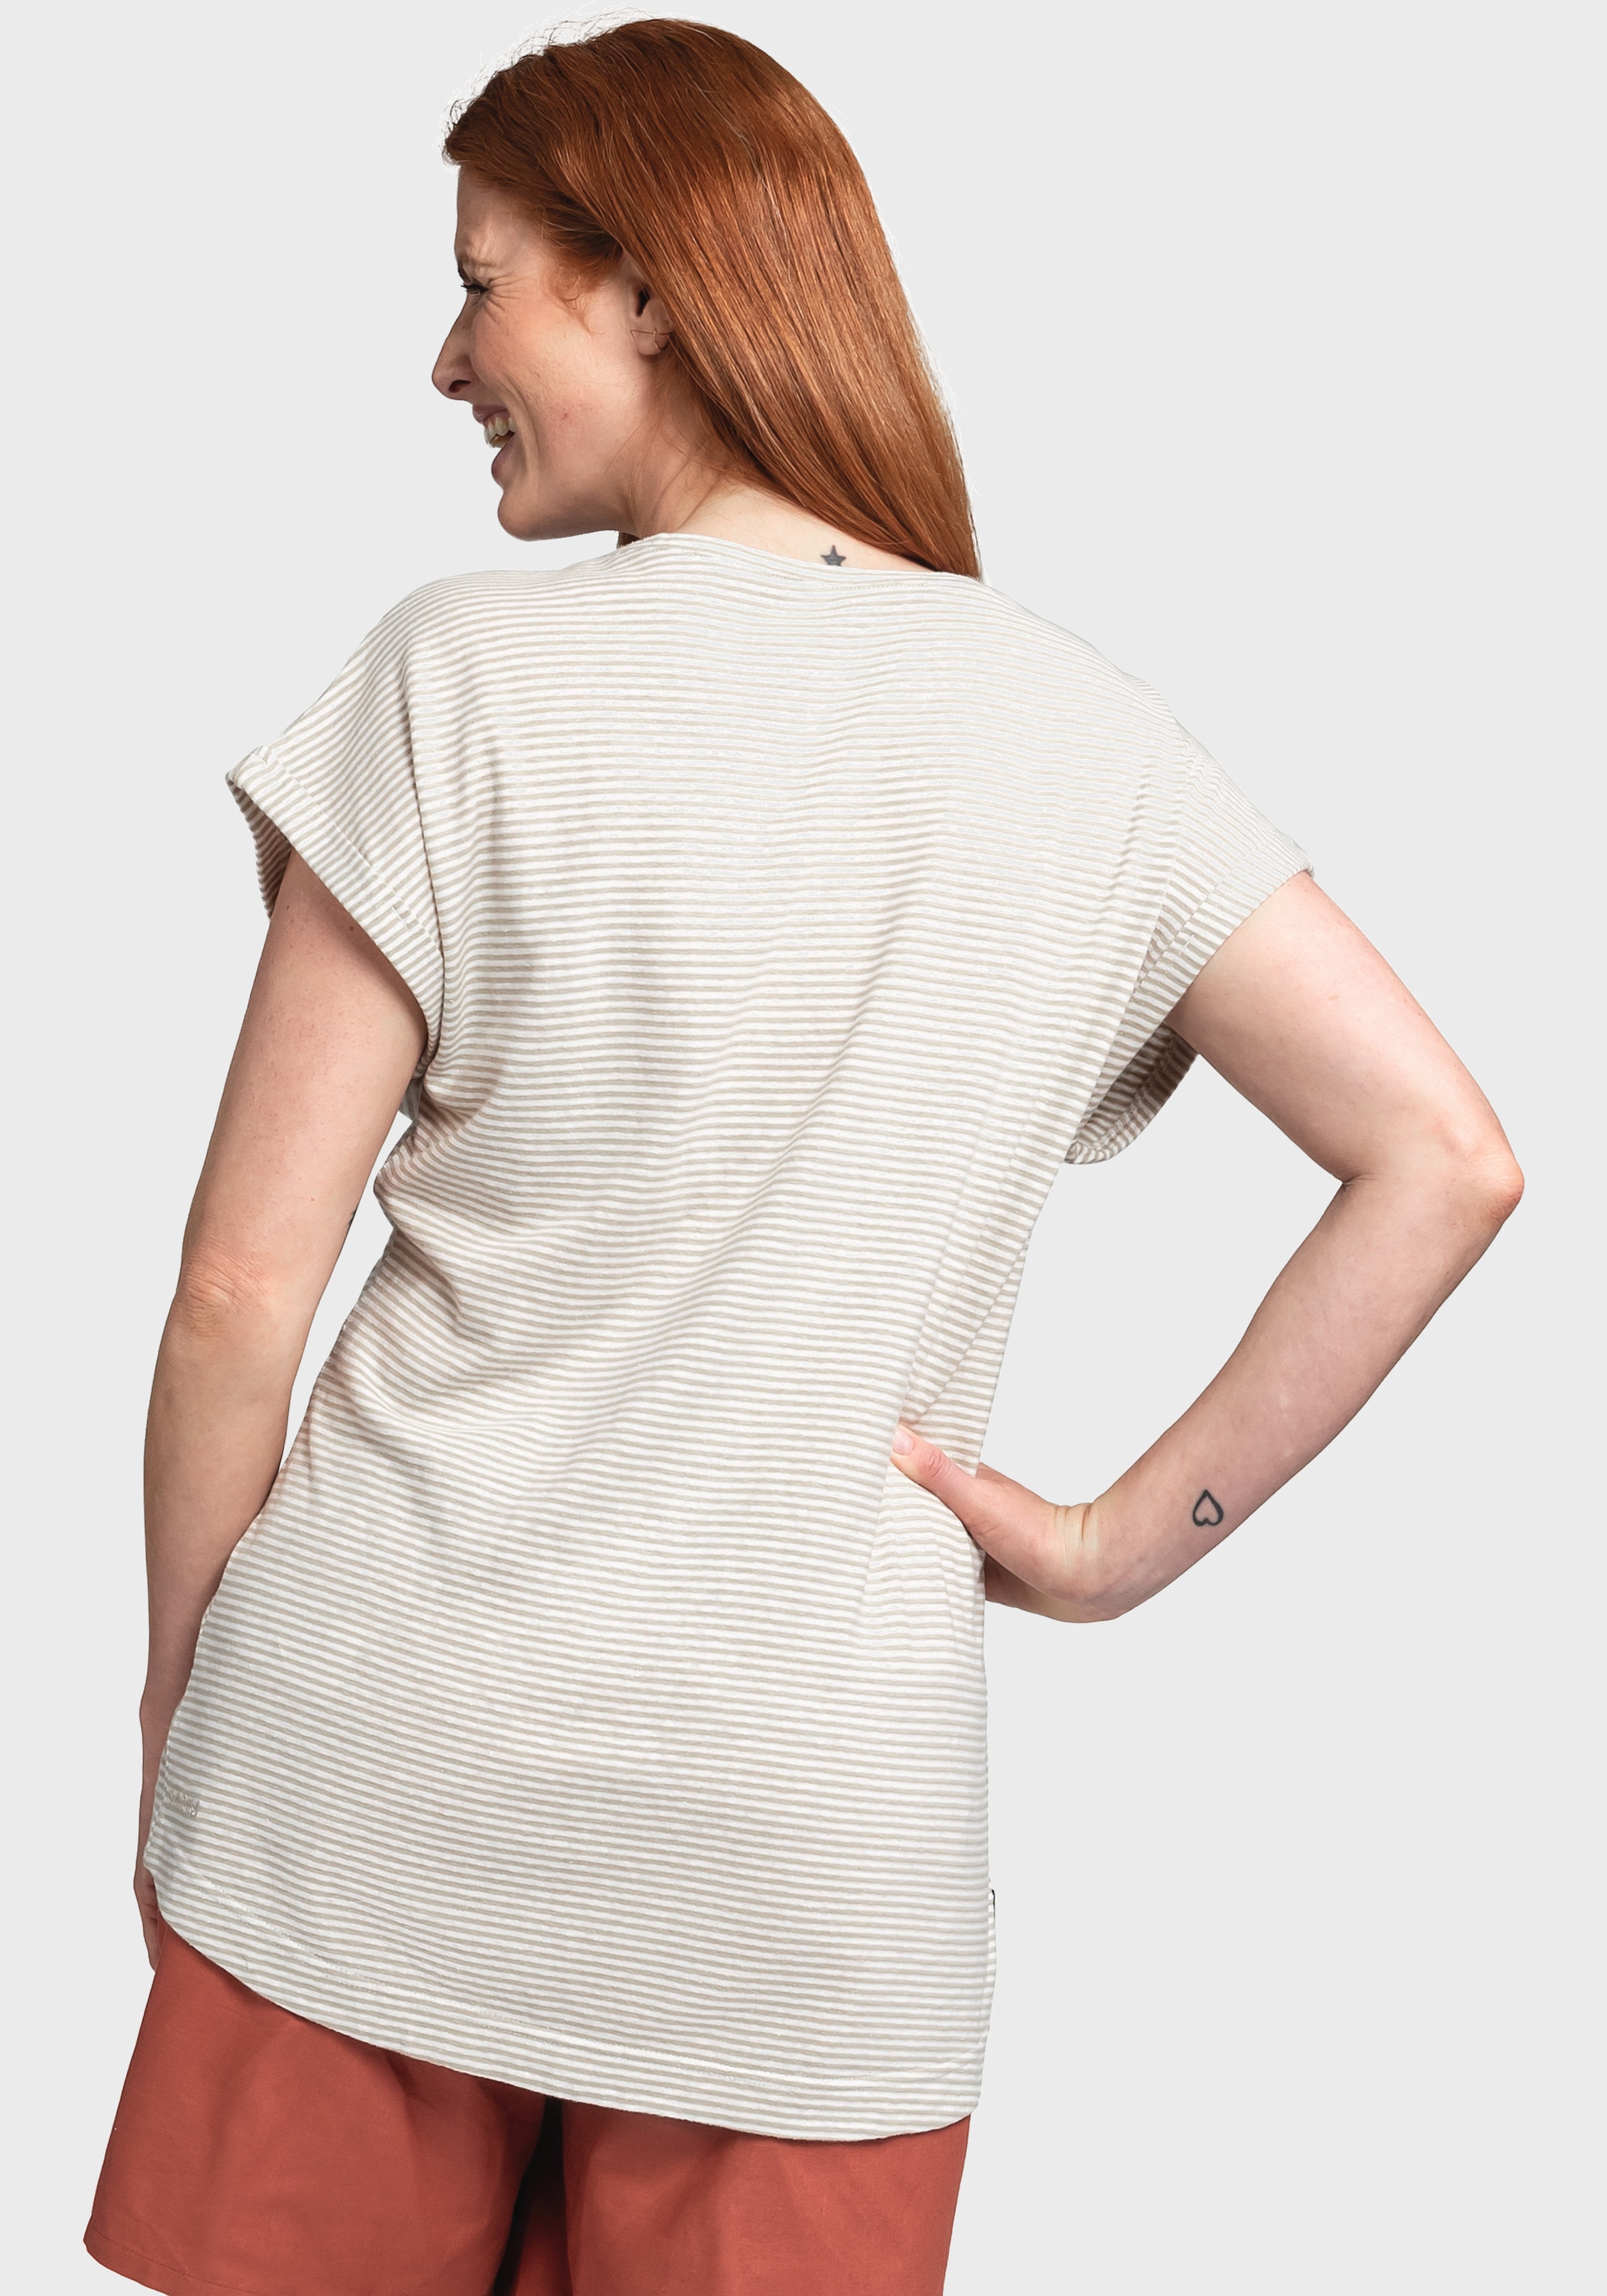 Schöffel Funktionsshirt »T Shirt Murcia L« im OTTO Online Shop kaufen | OTTO